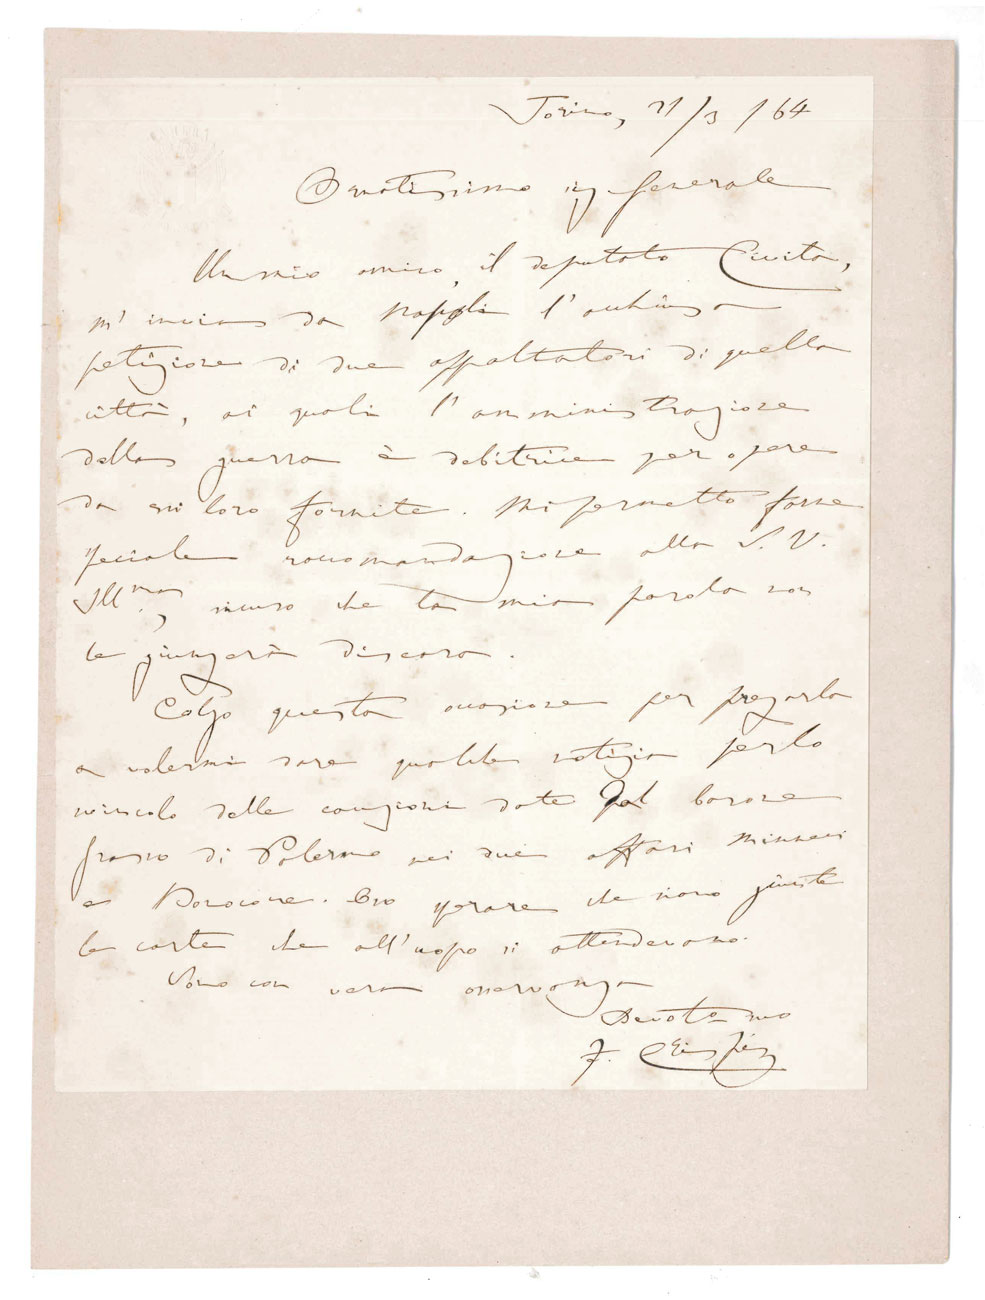 lettera autografa firmata inviata ad un generale. datata 21 marzo 1864